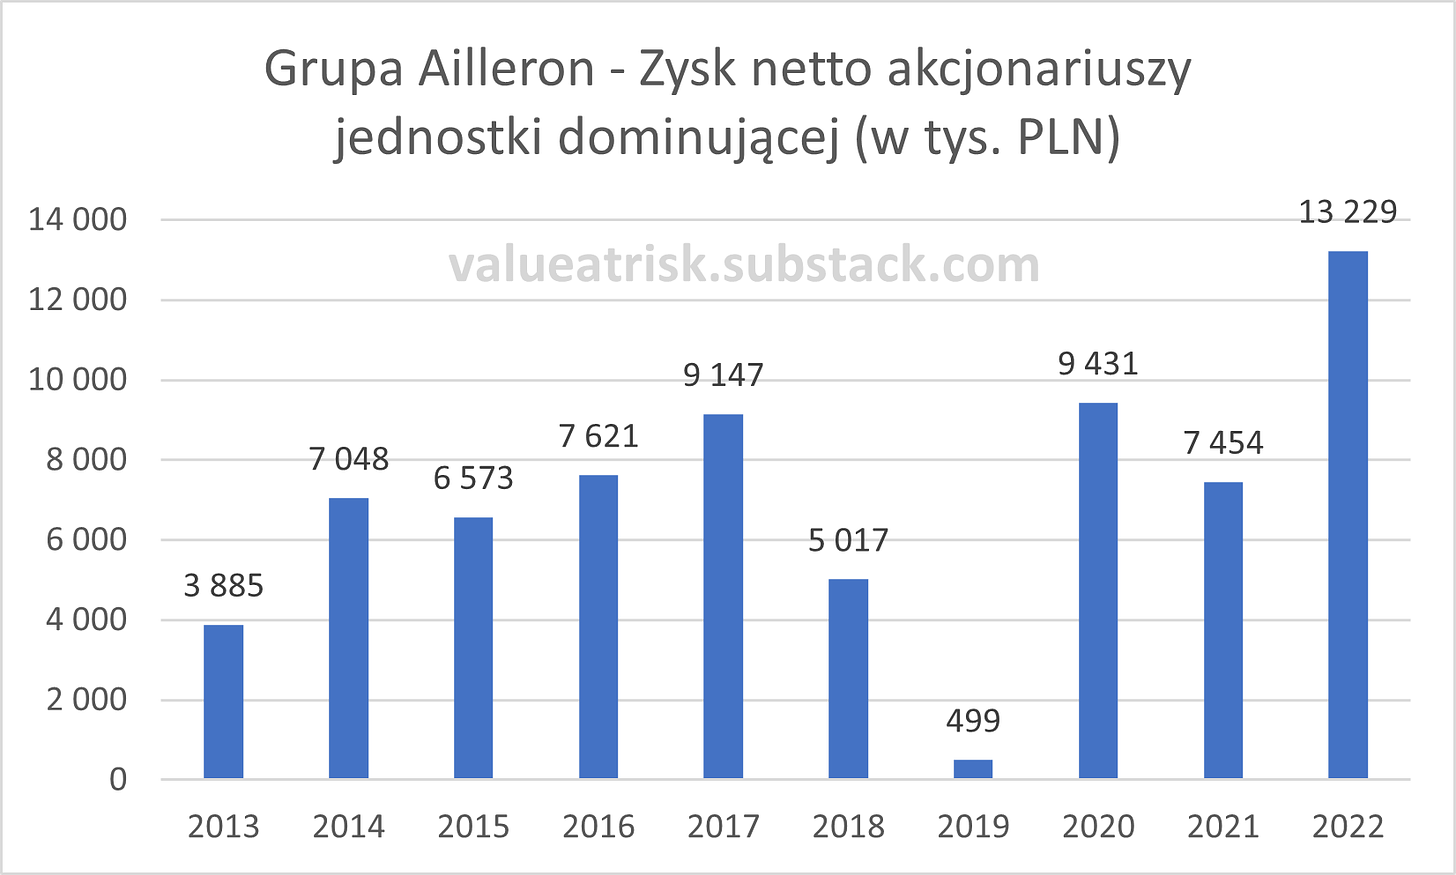 Grupa Ailleron - Zysk netto akcjonariuszy jednostki dominującej